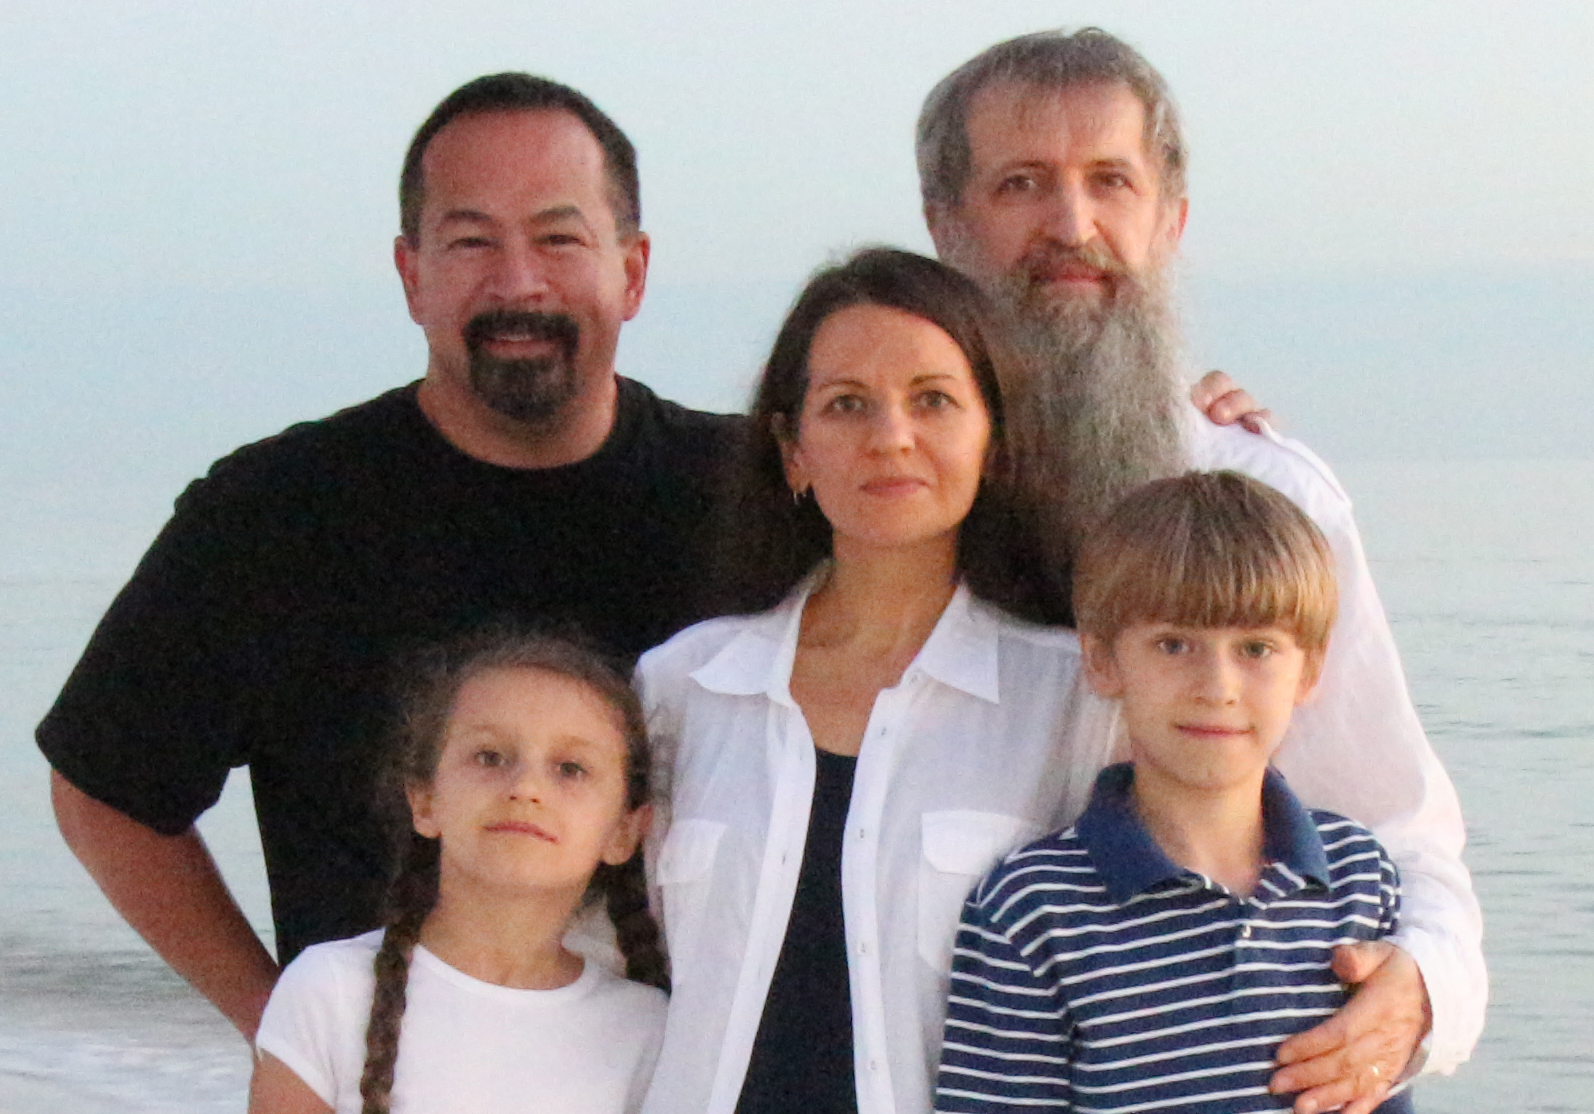 With Alexei & his family